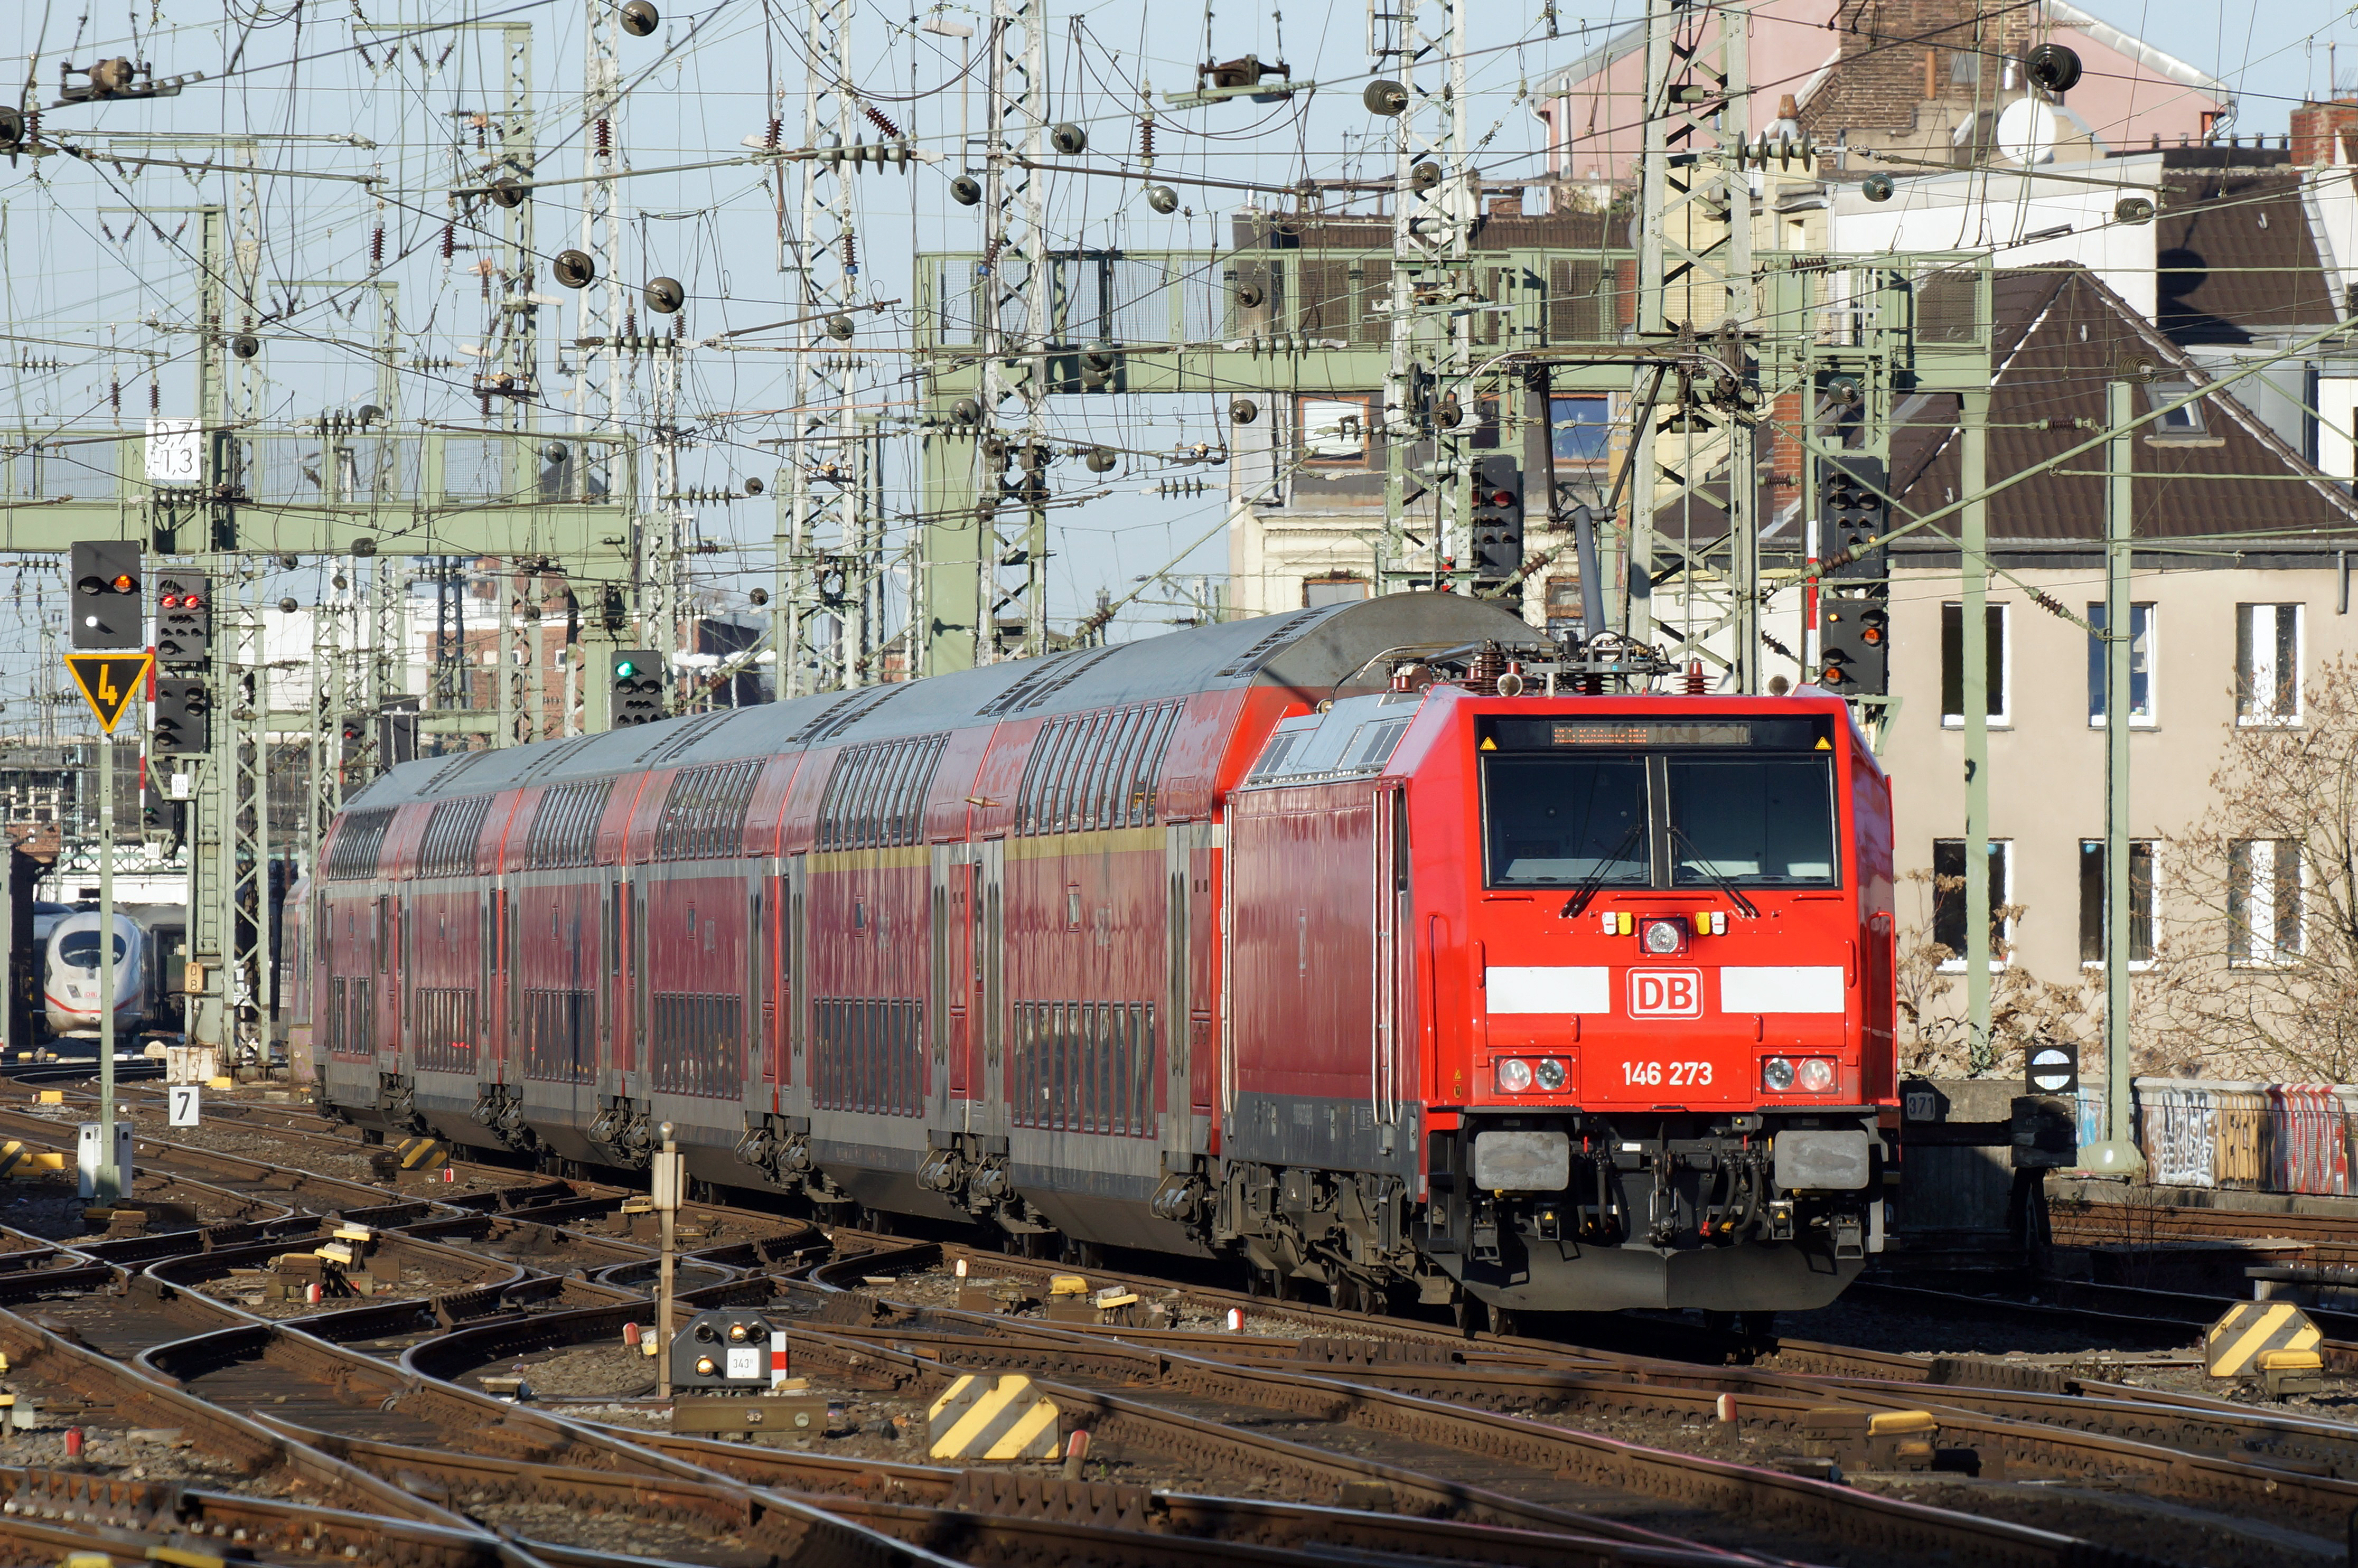 146 273 Köln Hauptbahnhof 2015-12-26-02